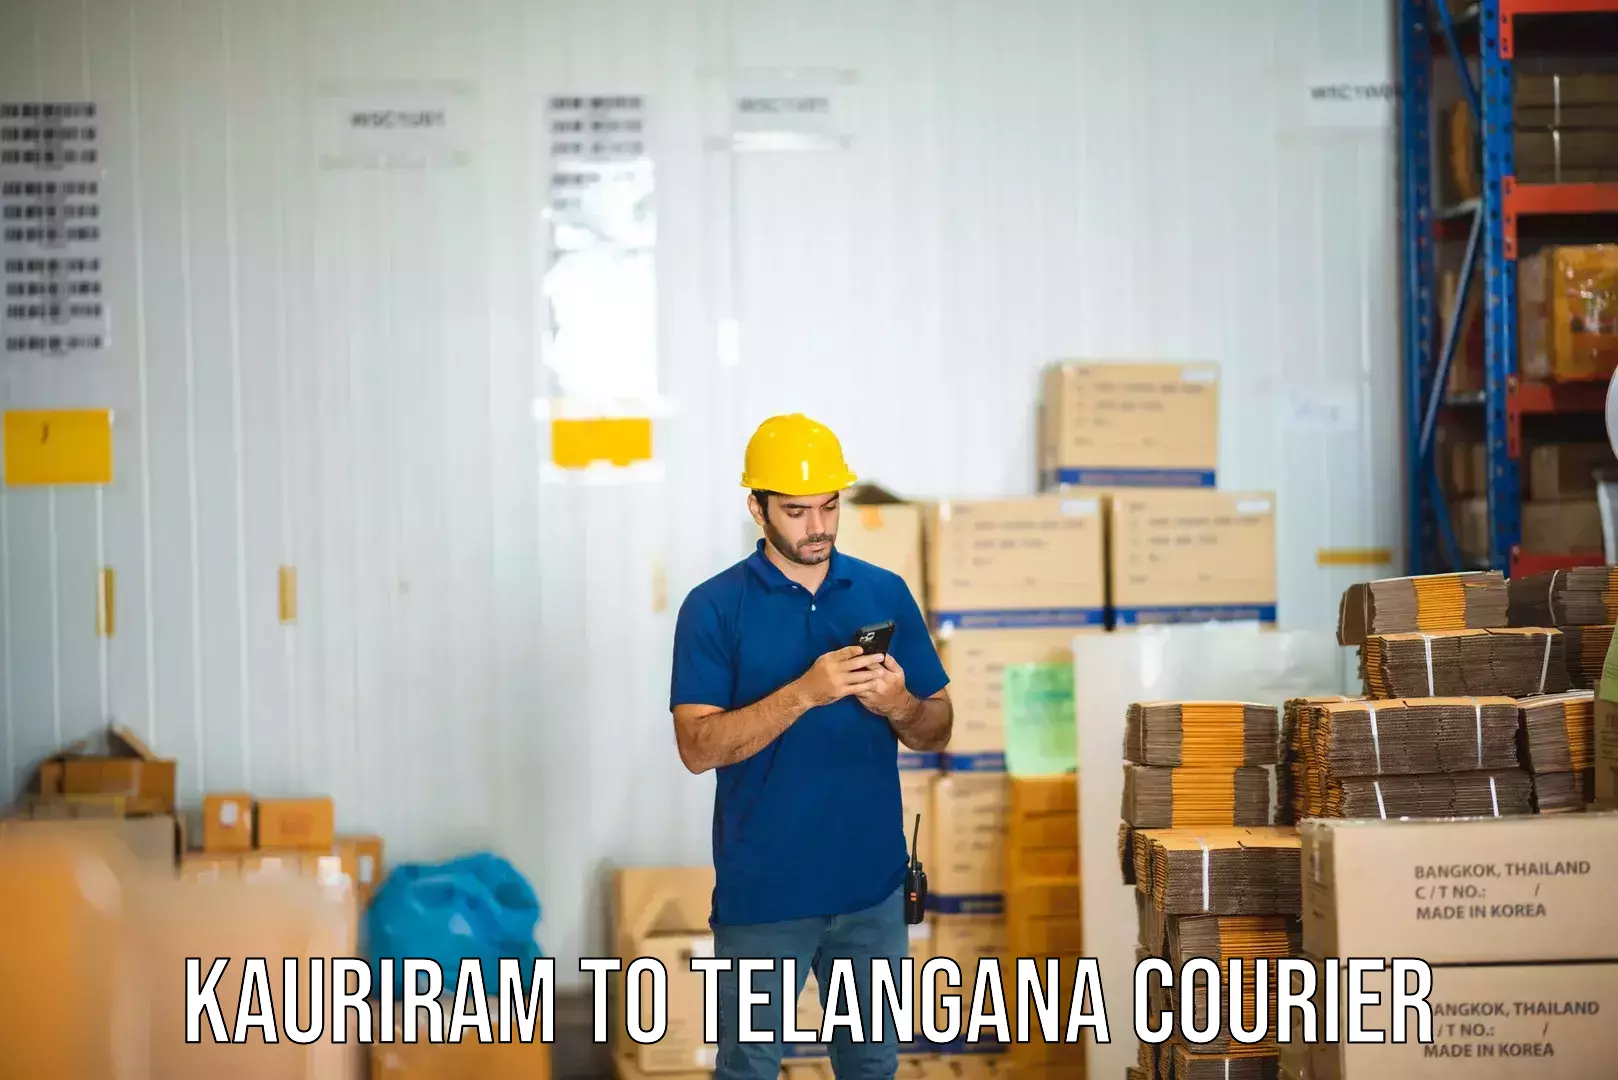 Premium courier solutions Kauriram to Chennur